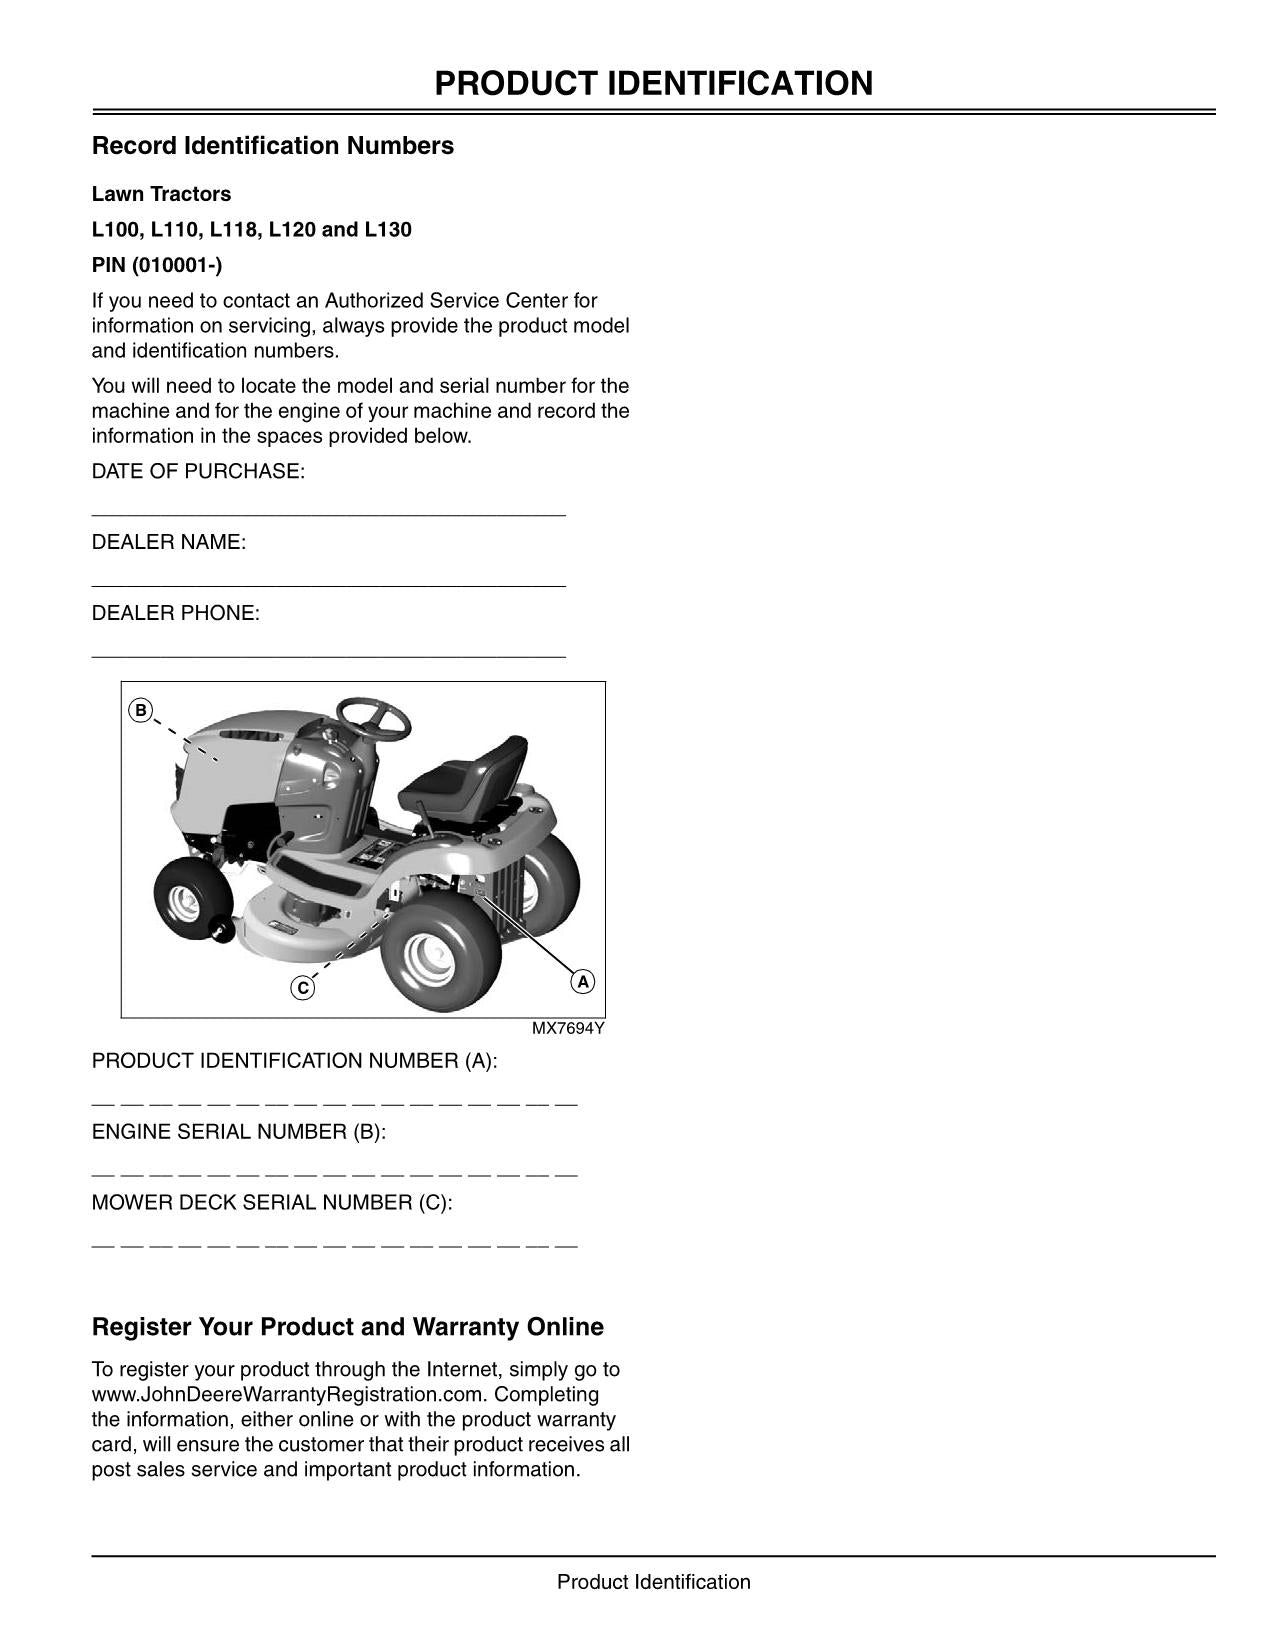 John Deere L100 L110 L120 L130 L118 Tractor Operators Manual Profmanual 1802